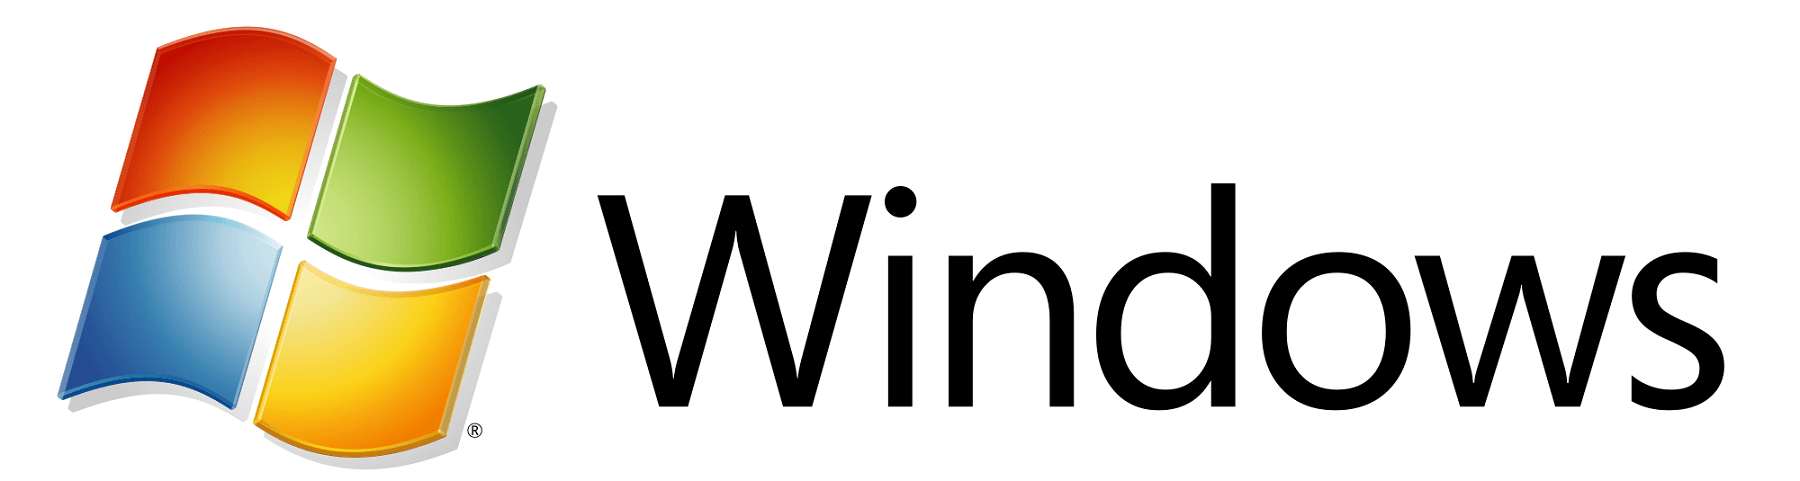 Microsoft Windows Logo - Microsoft Windows Logo PNG Transparent Microsoft Windows Logo.PNG ...